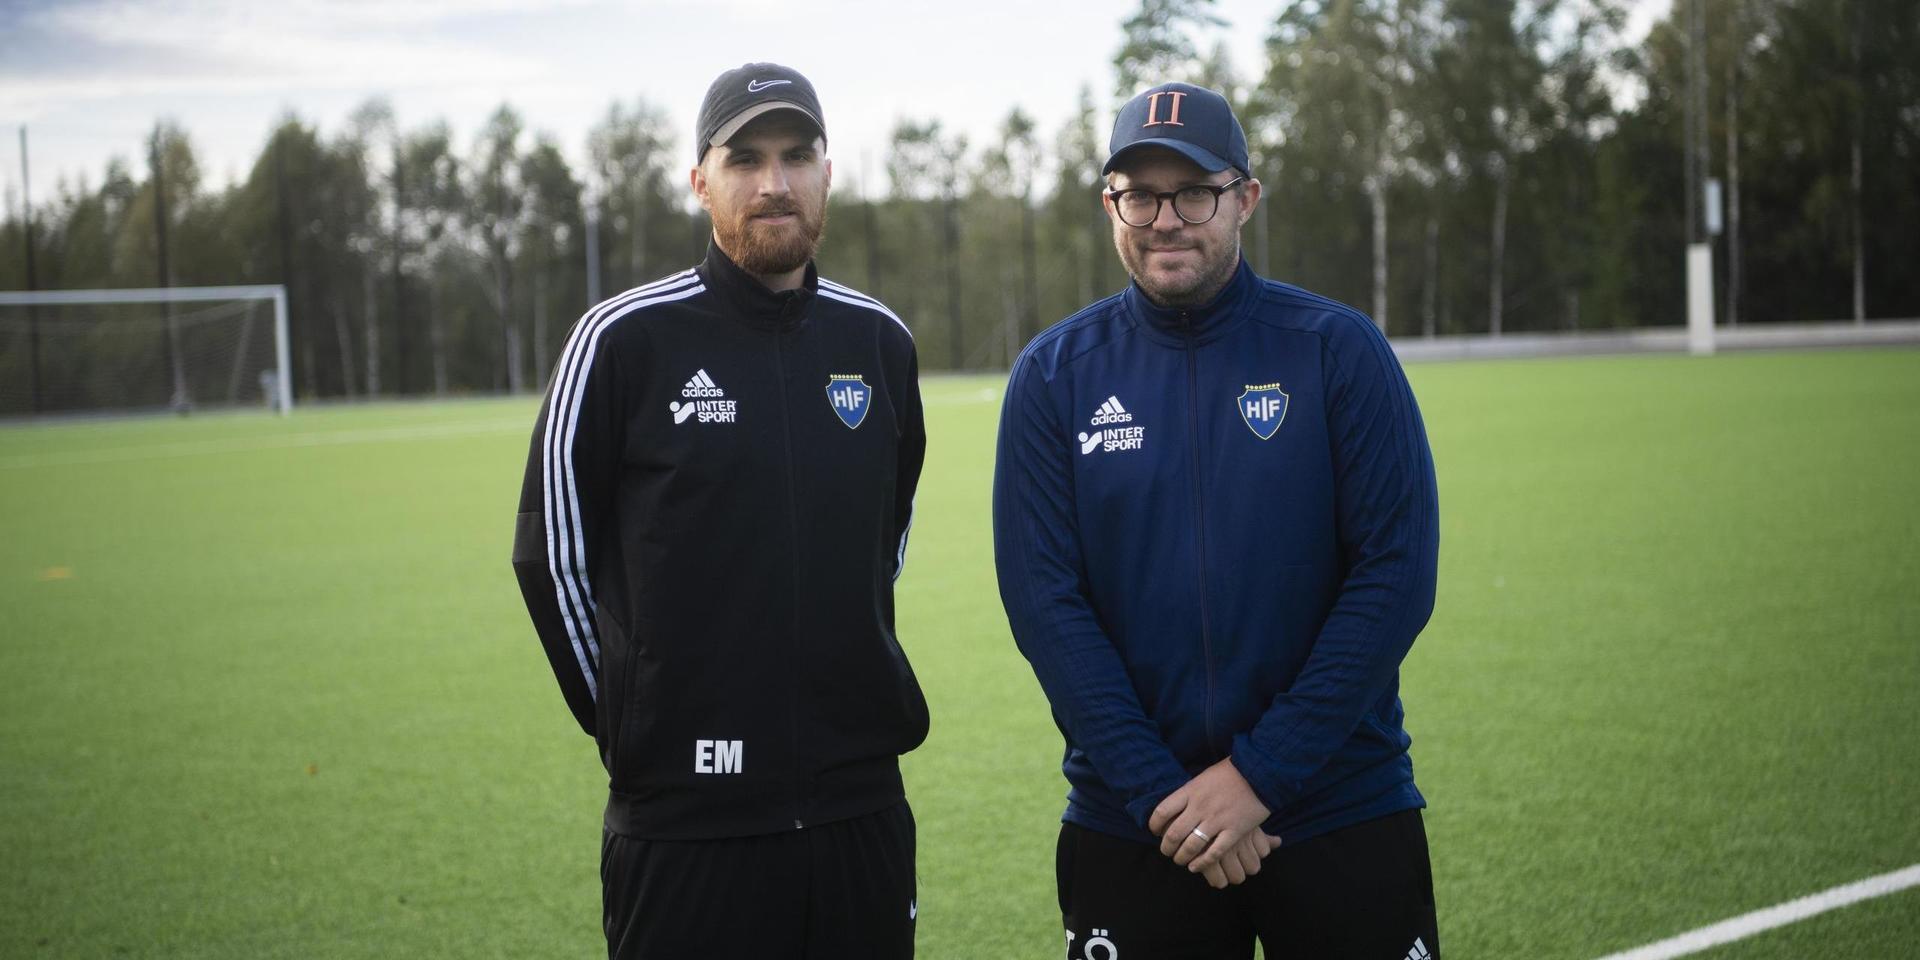 Egzon Maholli och Tobias Örnstedt gör succé som tränare i Hyltebruk och är obesegrade så här långt i femman.